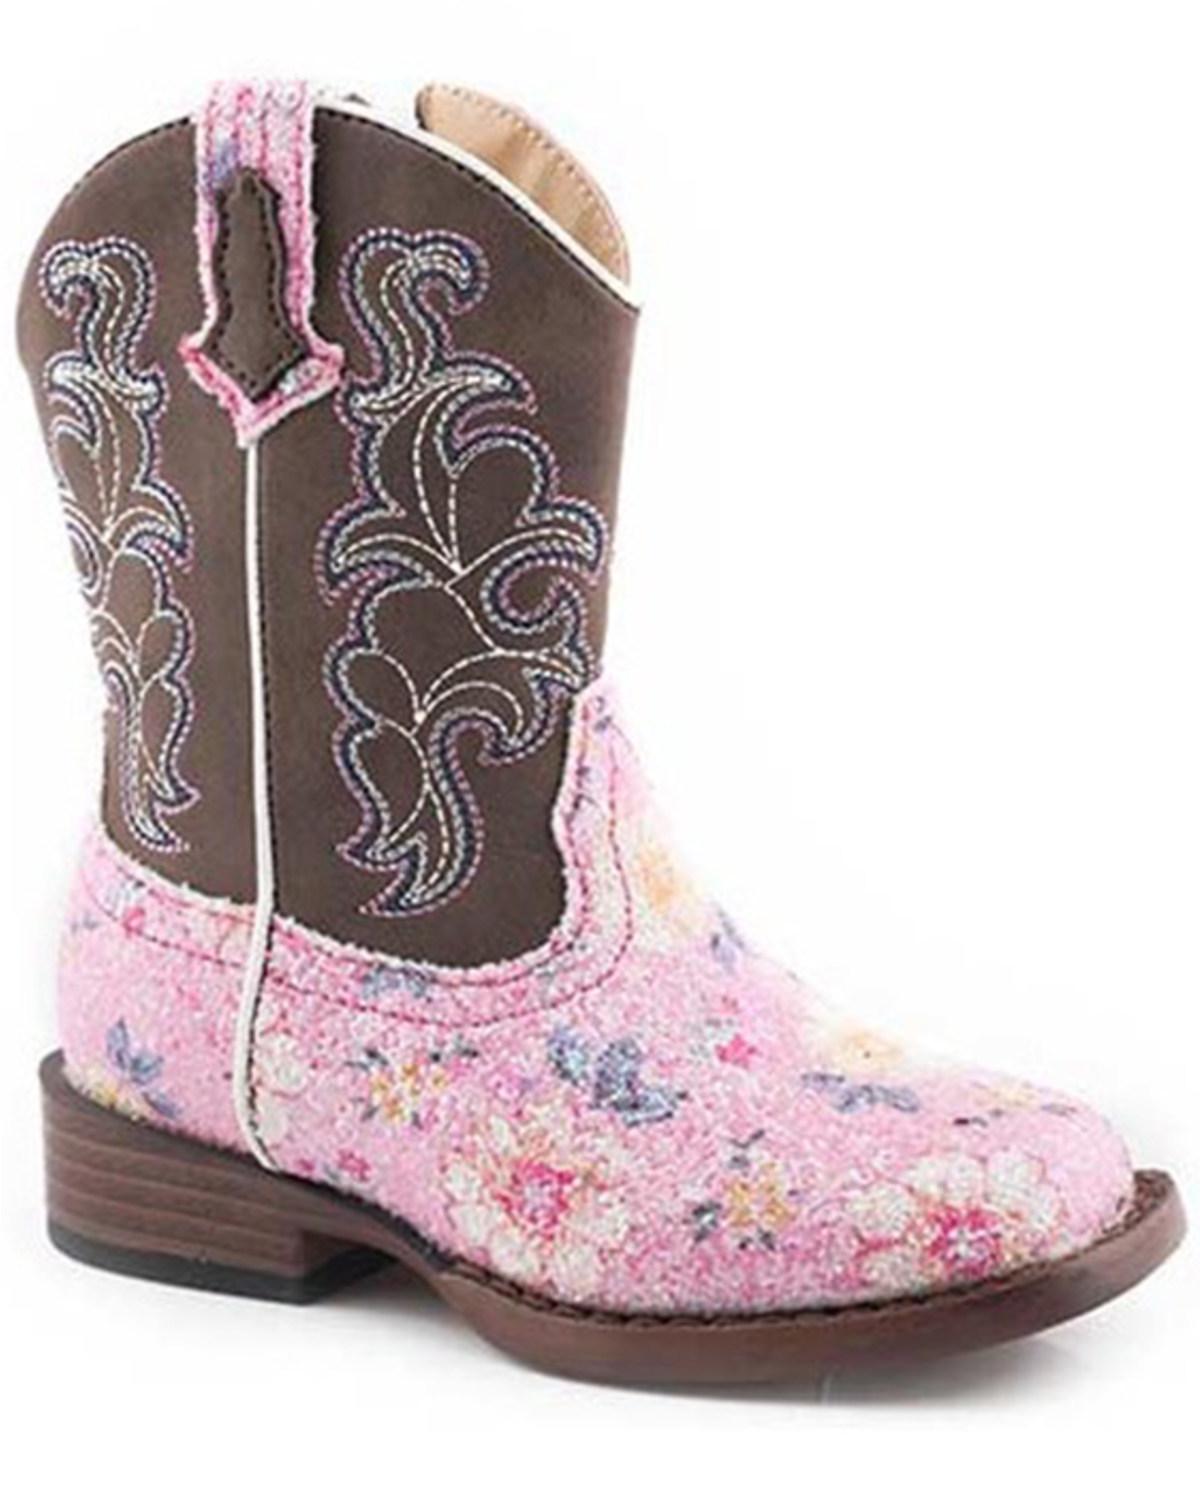 Roper Toddler Girls' Glitter Flower Western Boots - Square Toe